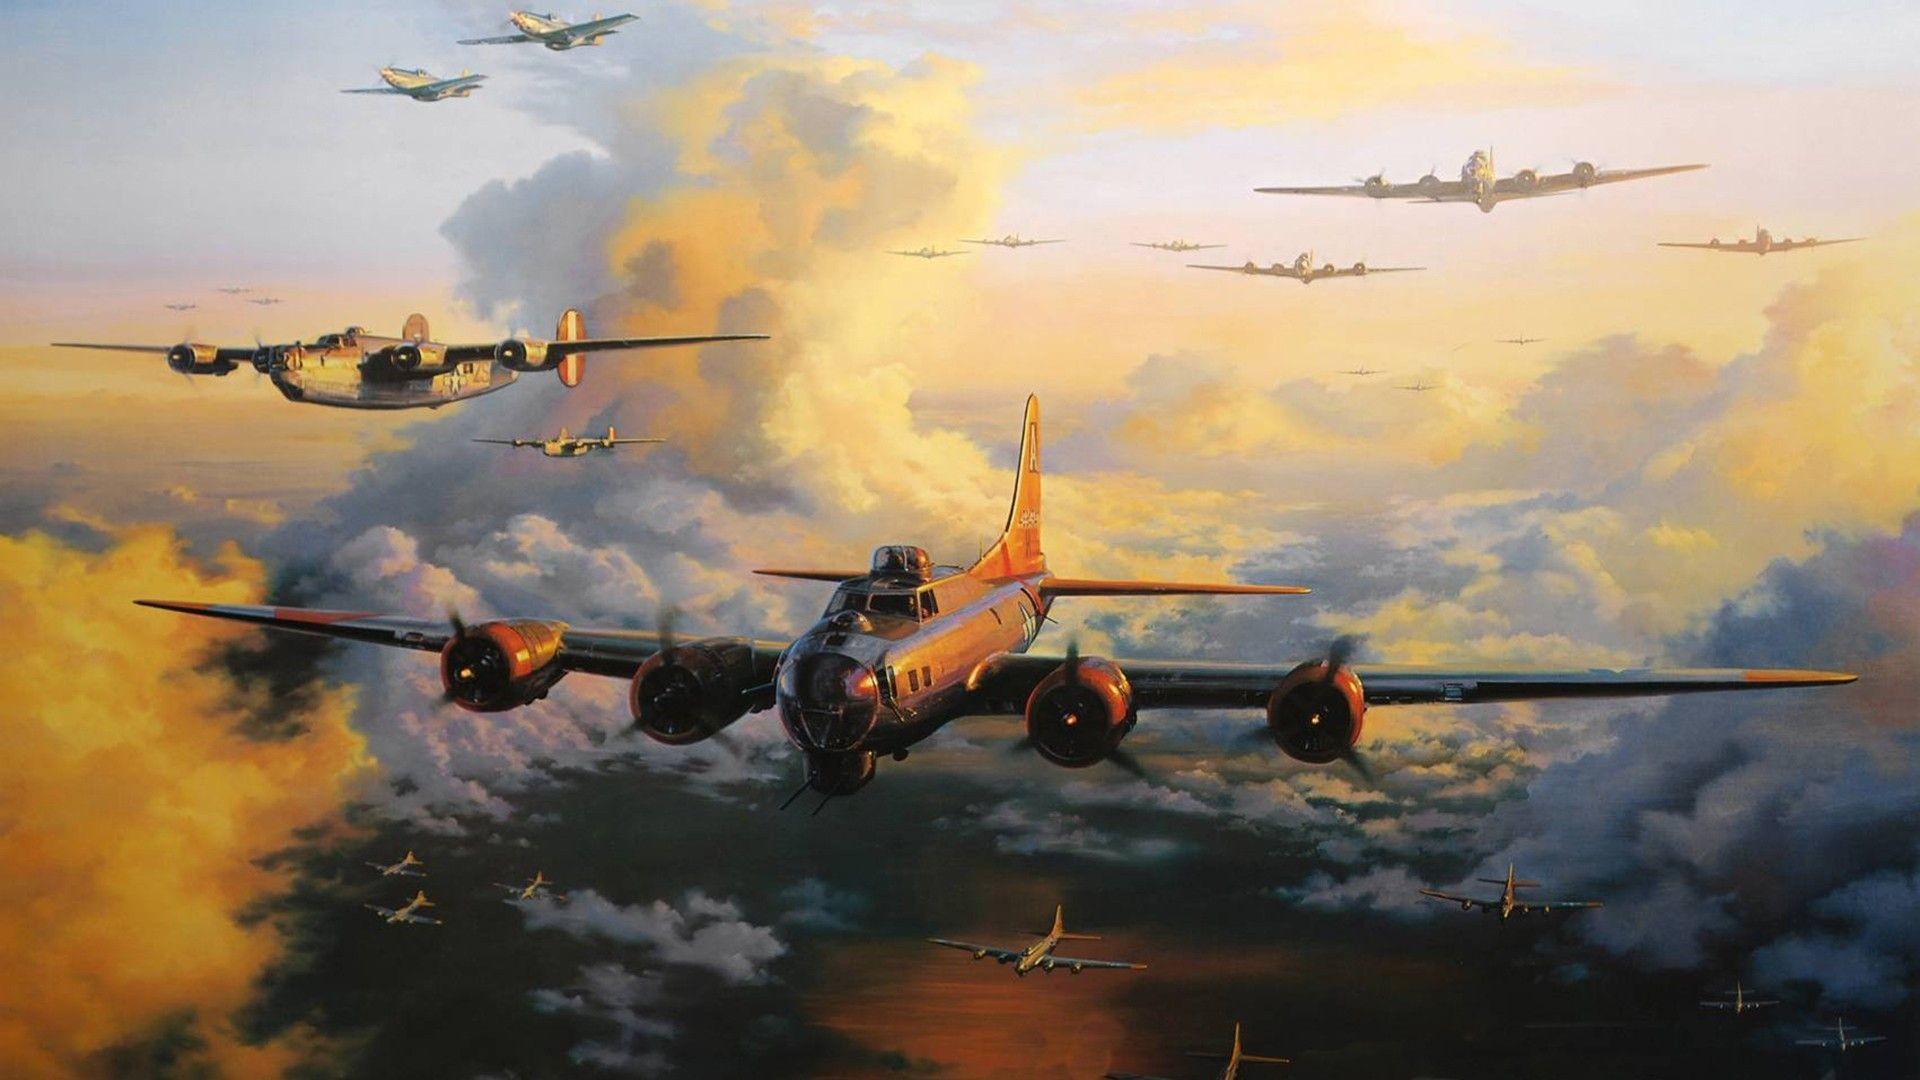 1920x1080 Aircraft military bomber world war ii wallpaper